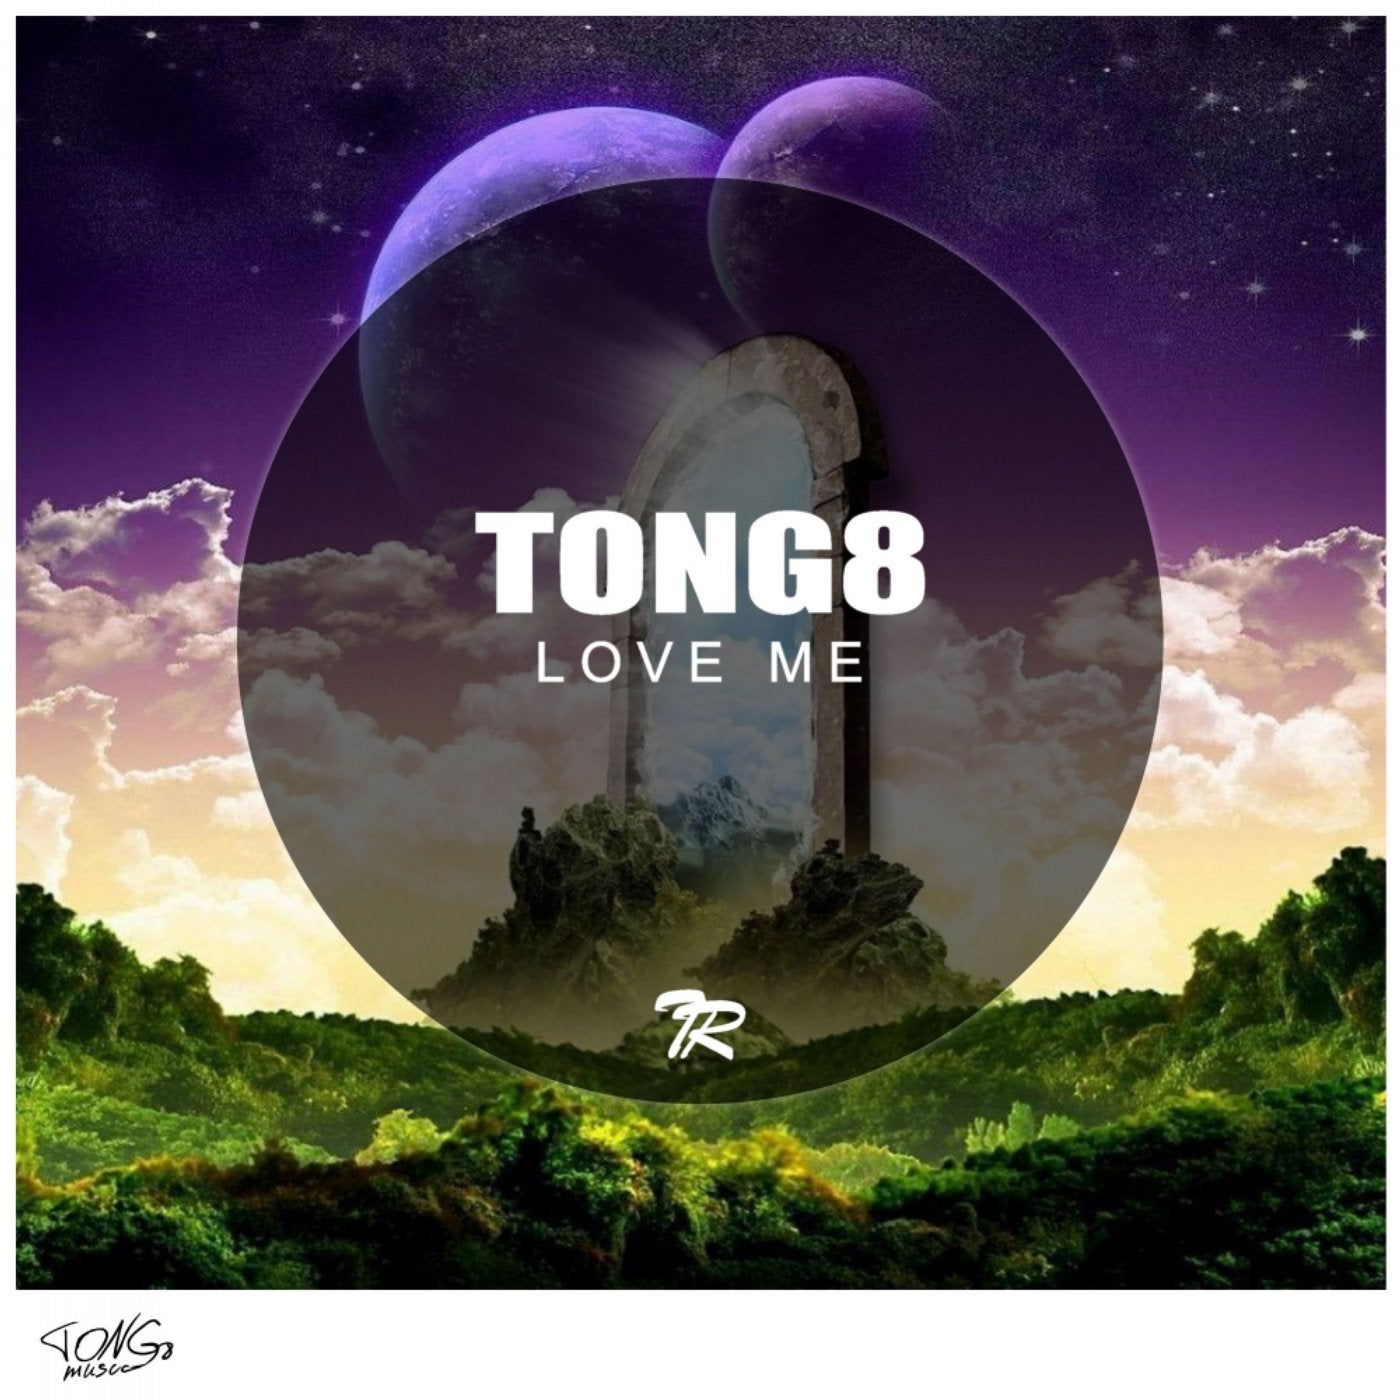 Tong8 music download - Beatport